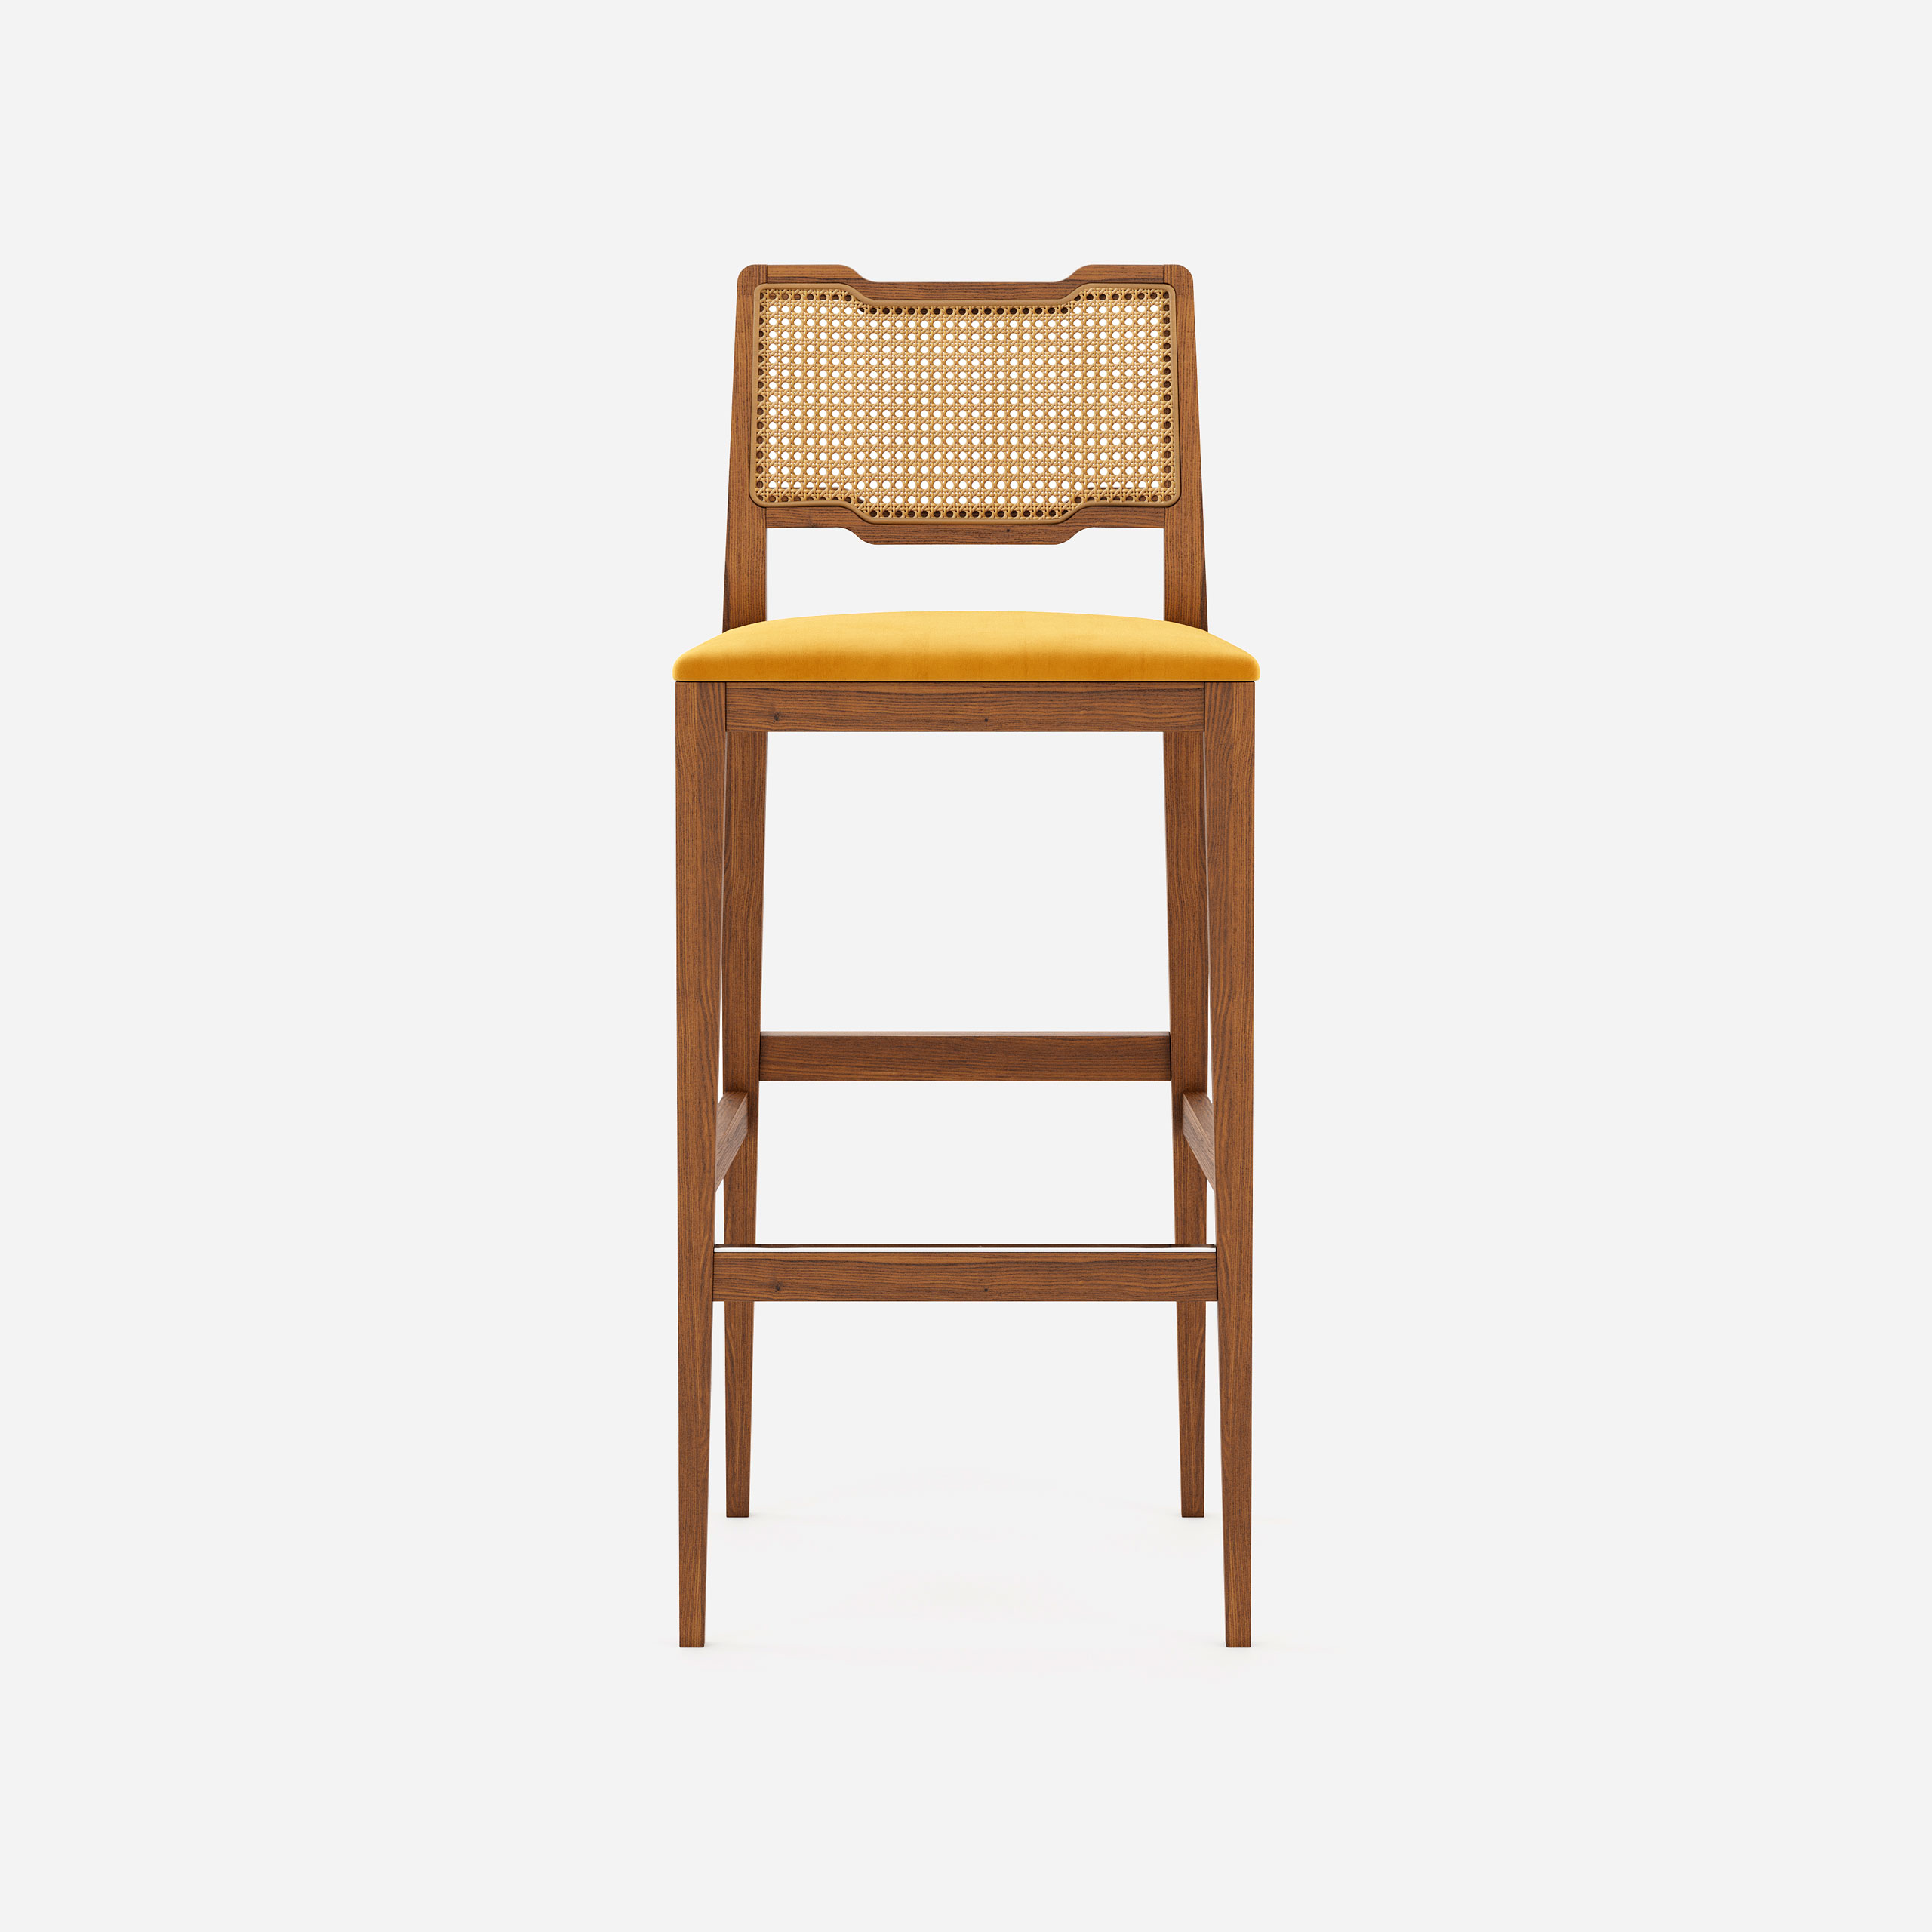 eva-bar-chair-new-collection-domkapa-2021-1